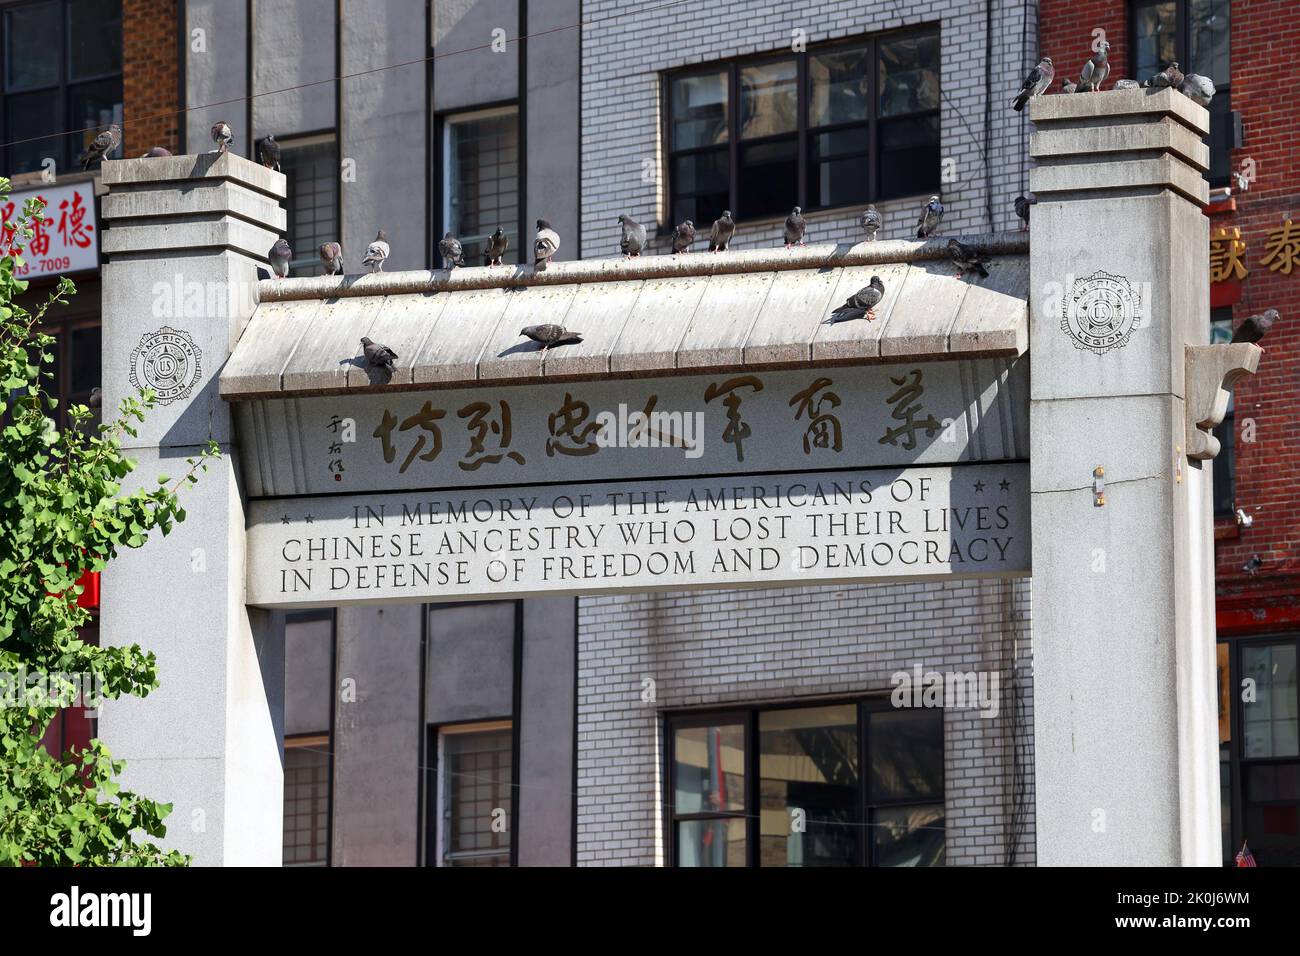 Kimlau Memorial Arch en hommage aux vétérans sino-américains à Kimlau Square/Chatham Sq à Manhattan Chinatown, New York. 華埠, 紐約, 唐人街 Banque D'Images